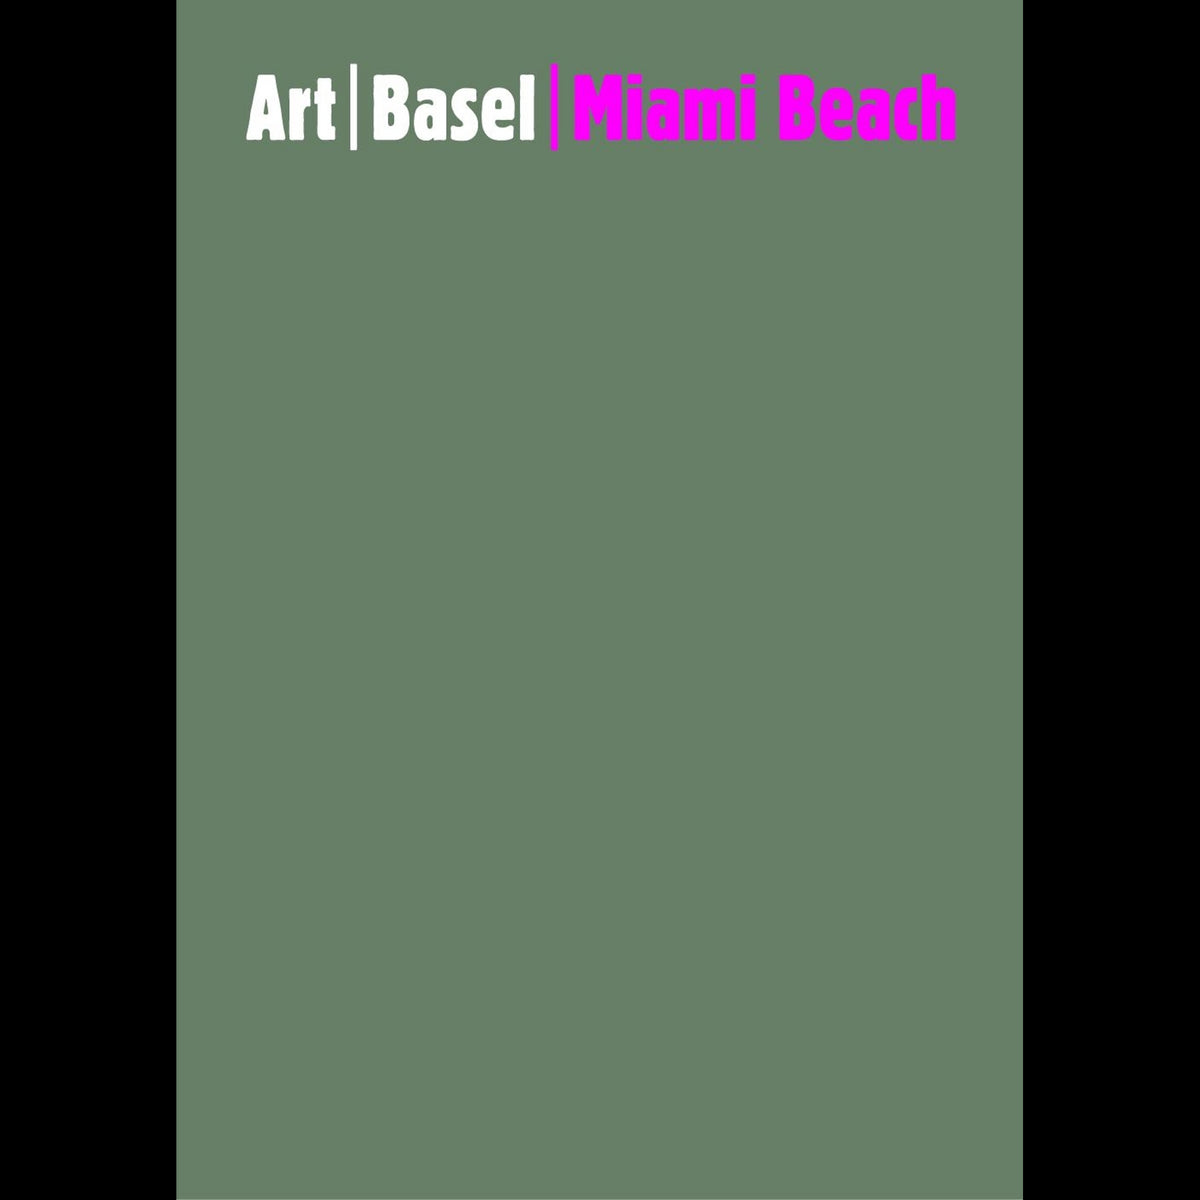 Coverbild Art Basel Miami Beach